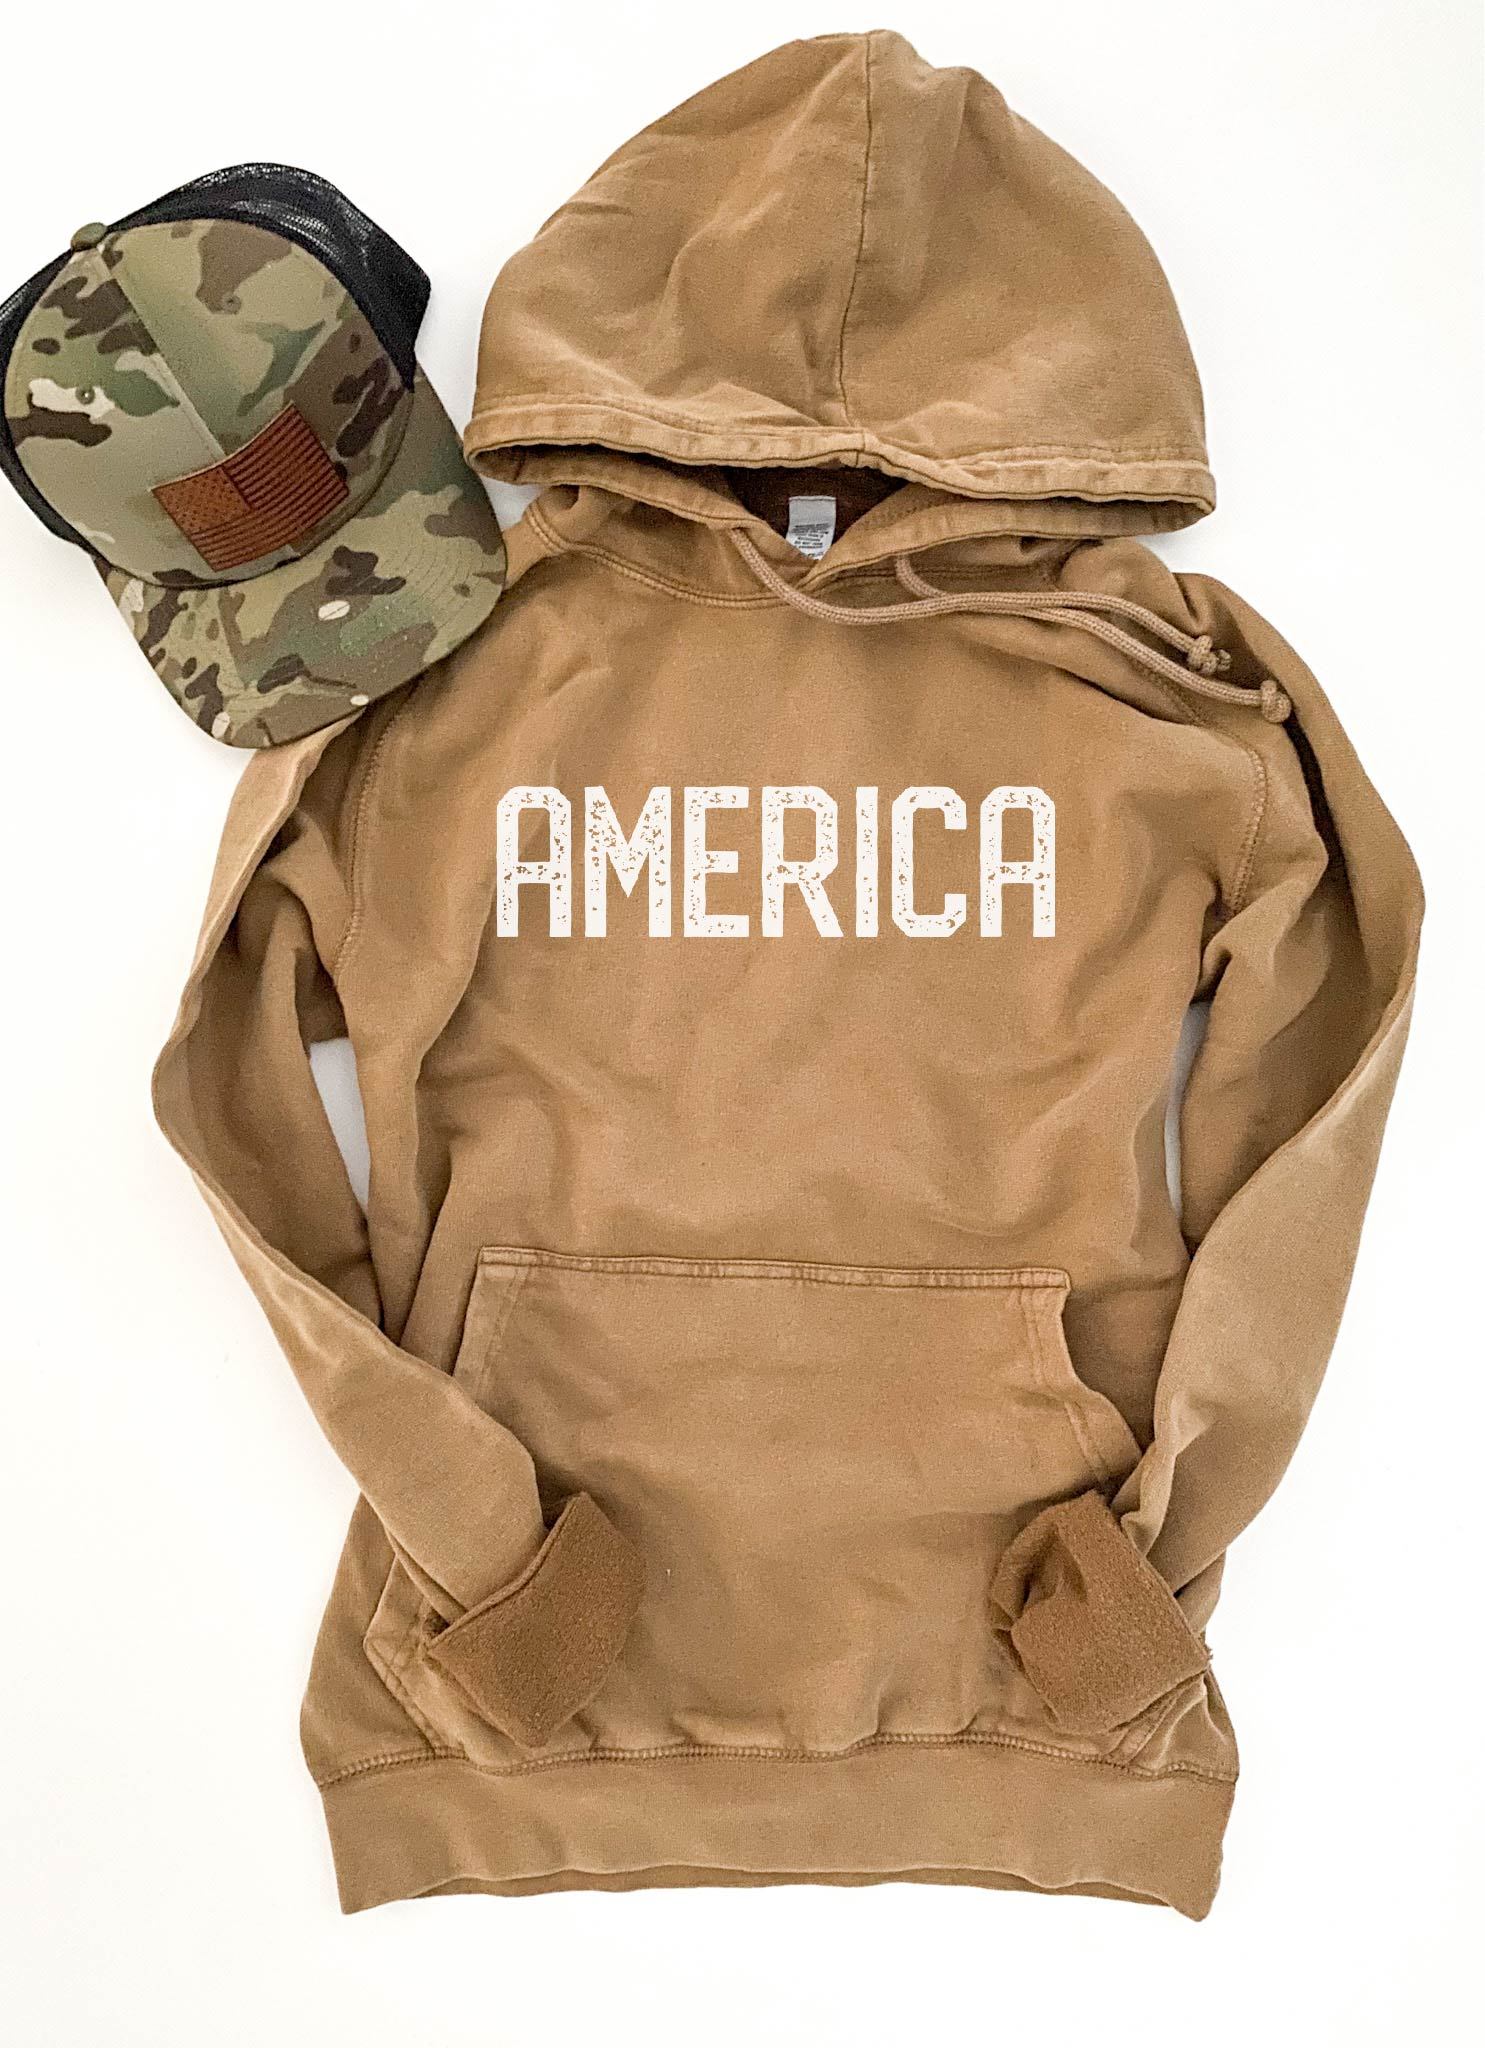 America blockletter vintage wash hoodie Patriotic hoodie Lane Seven vintage hoodie 